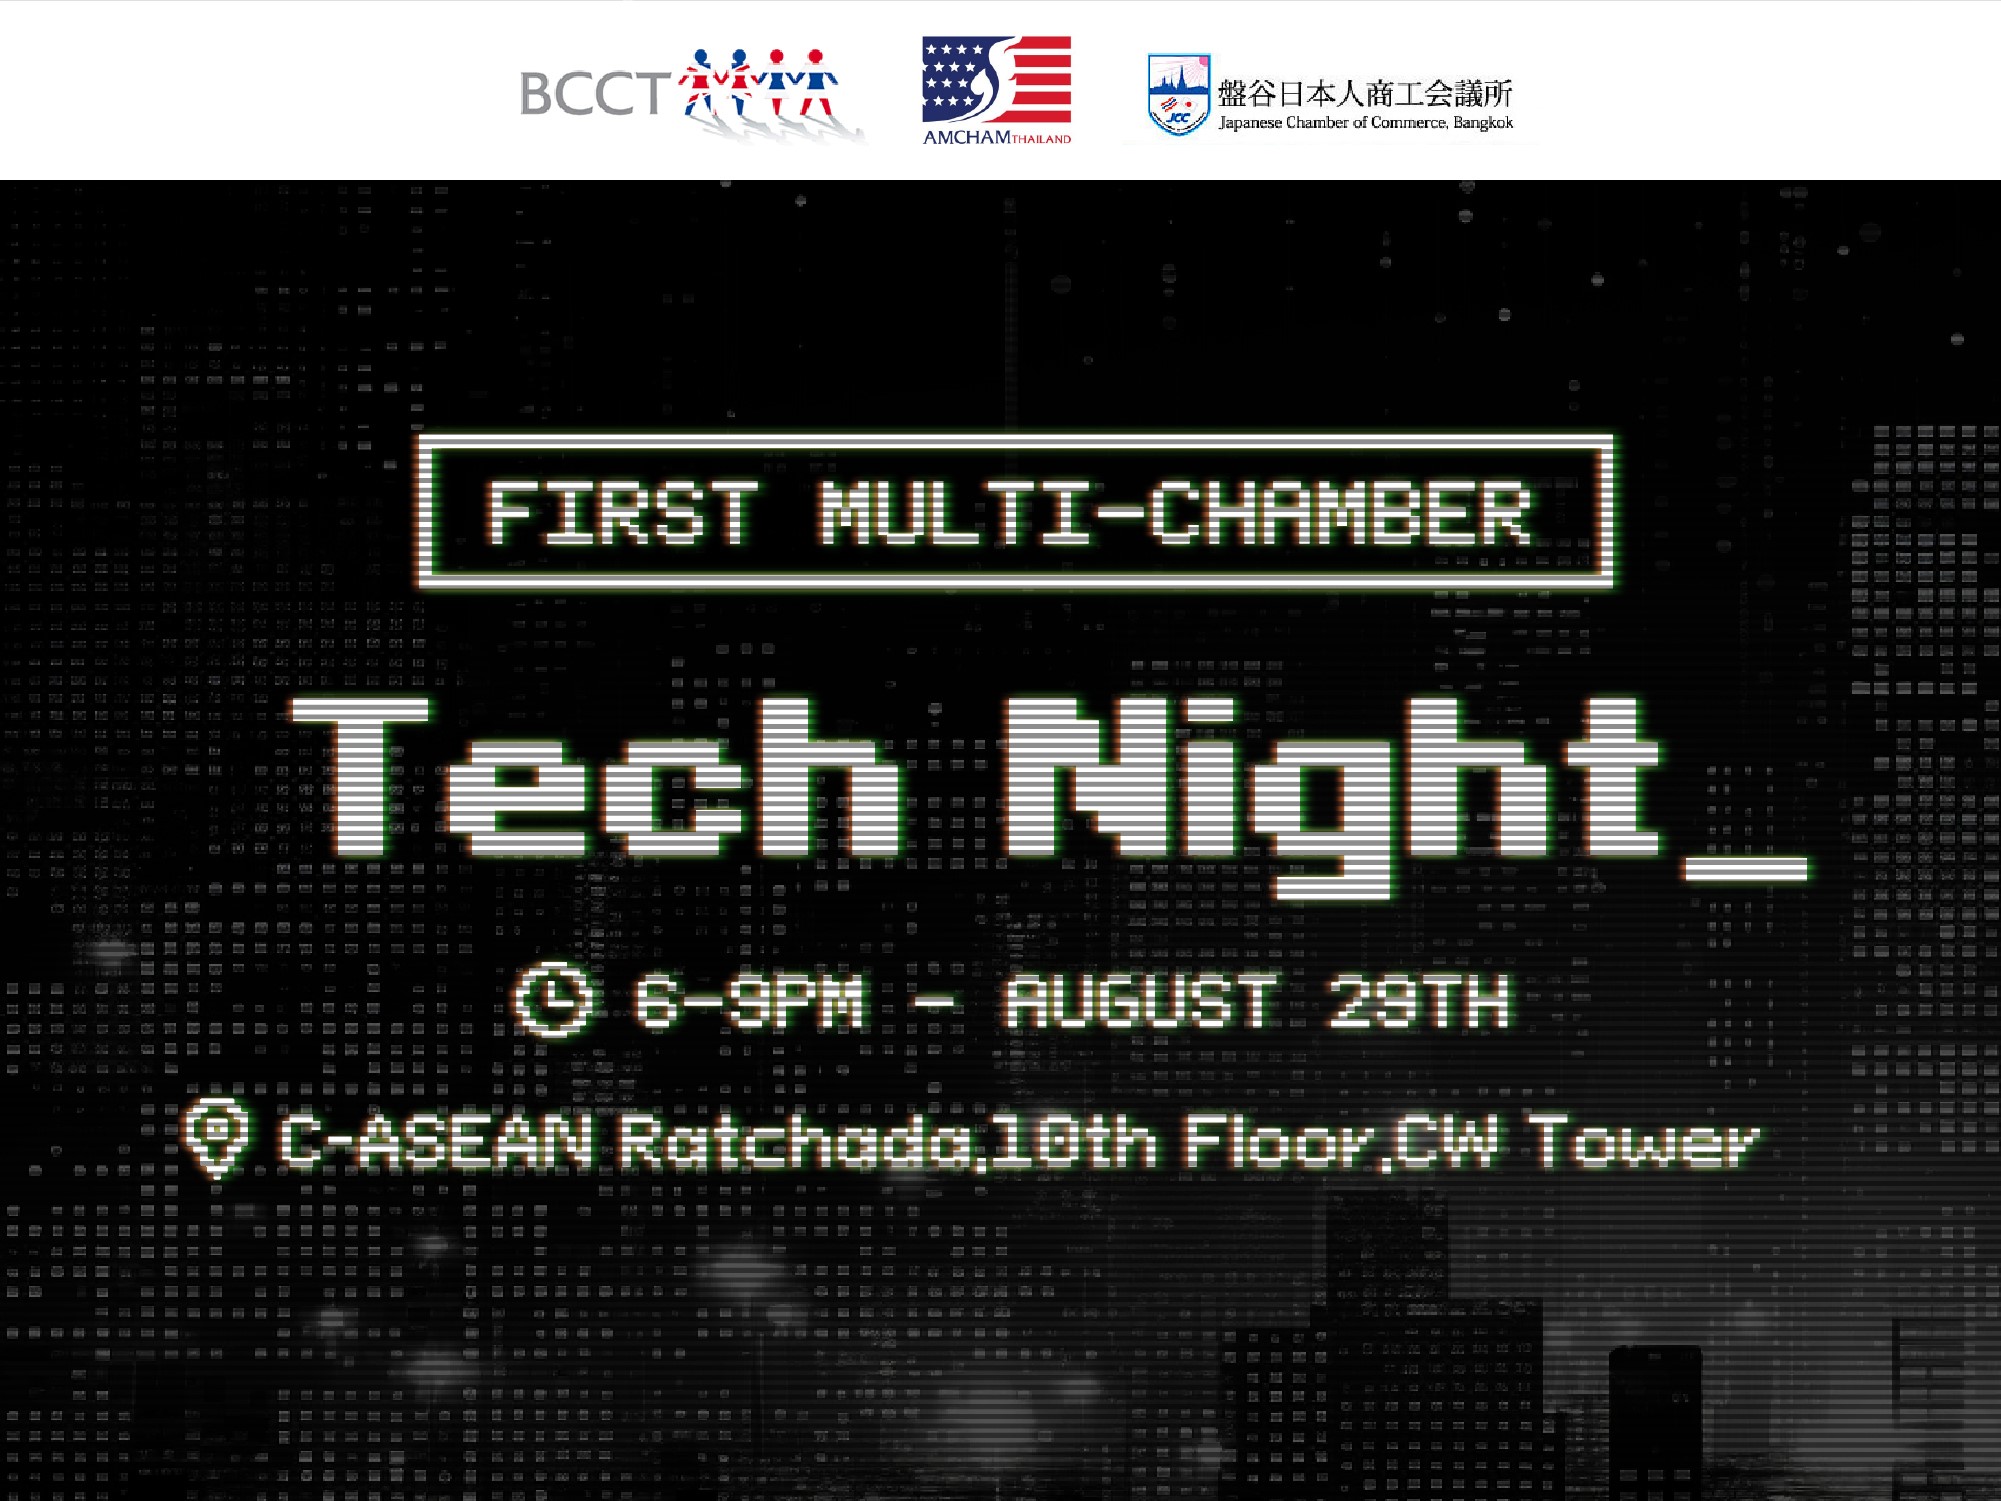 【開催中止のご案内】在タイ英国商工会×在タイアメリカ商工会議所×JCCによる合同事業「Tech Night」中止のご案内